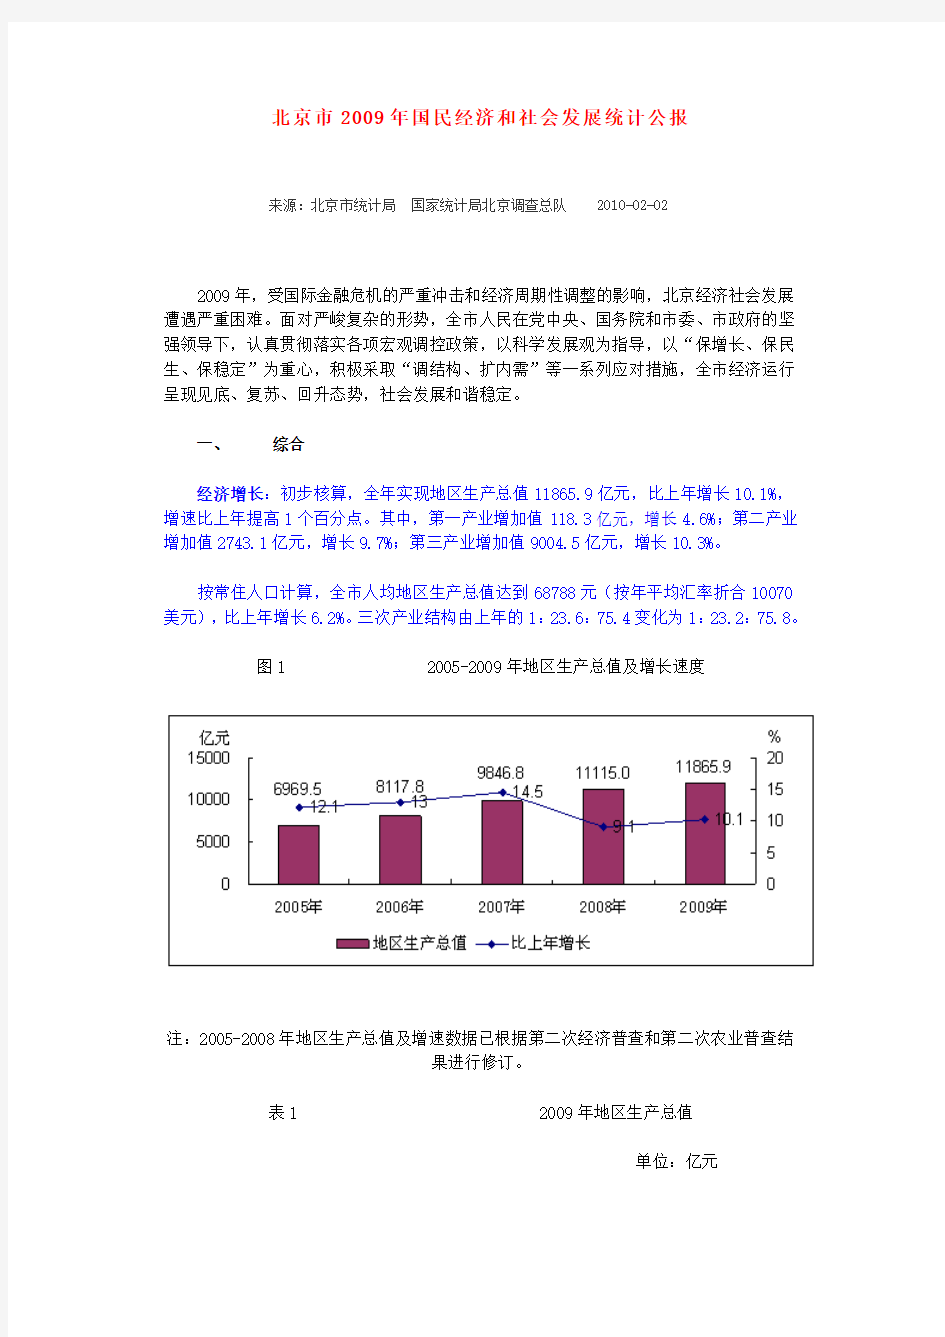 北京2009统计公报